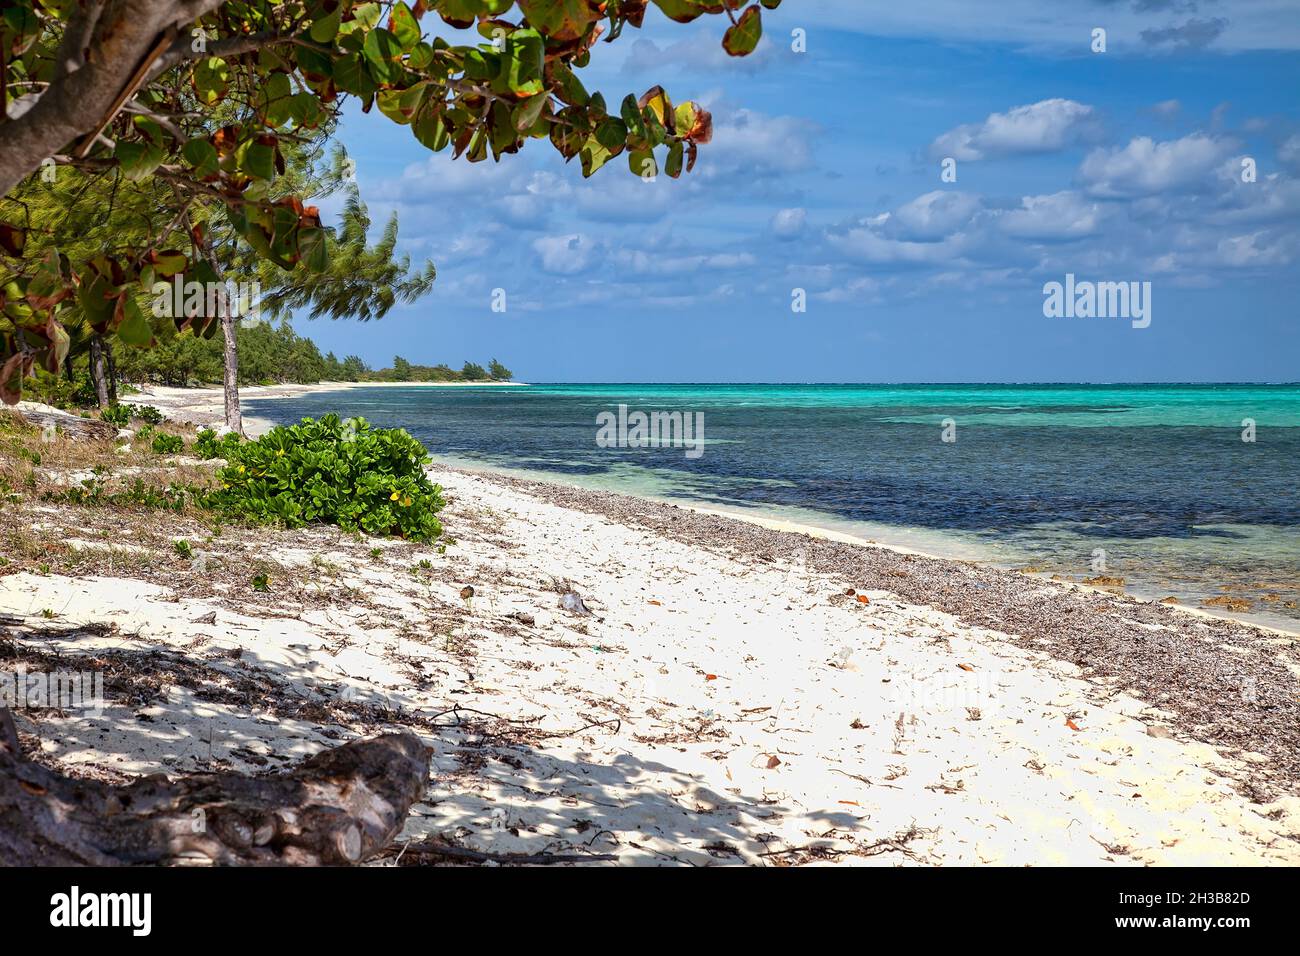 Mar Caribe y las playas de arena blanca en Gran Caimán, Islas Caimán. Foto de stock